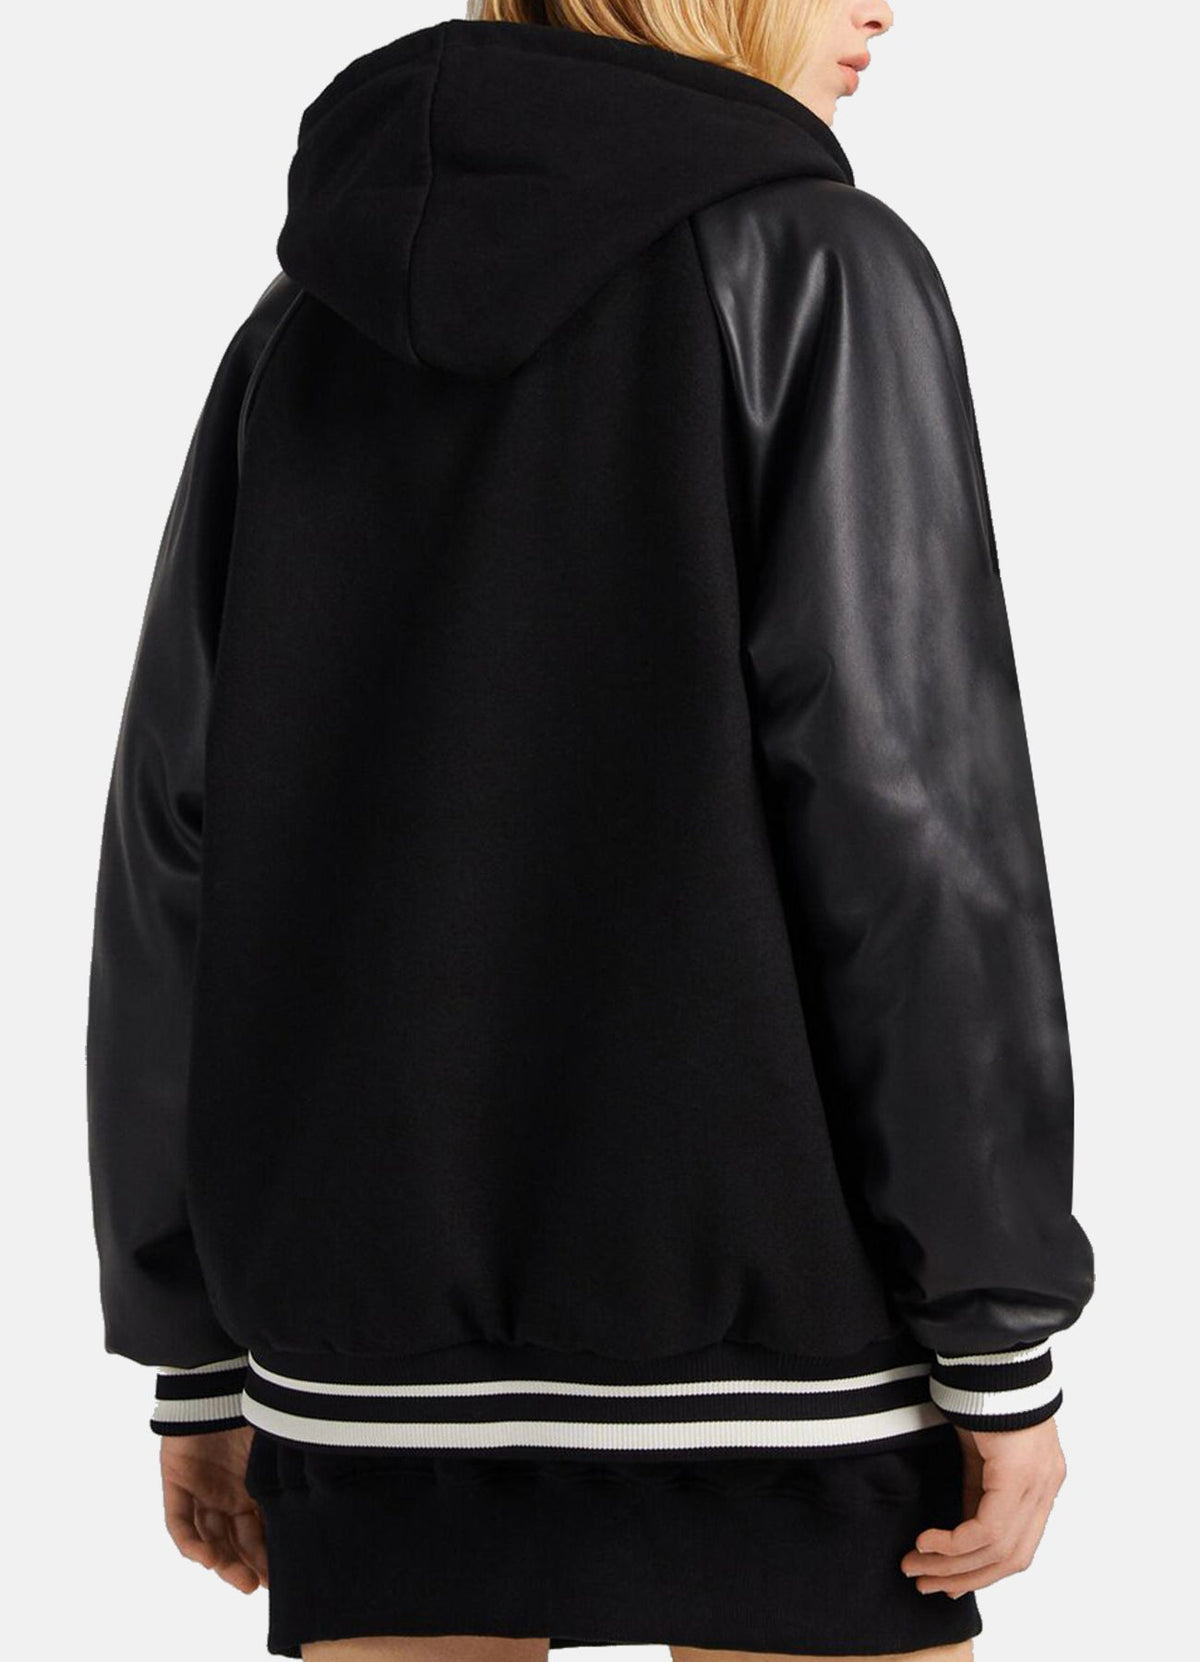 Womens Oversized Black Varsity Jacket